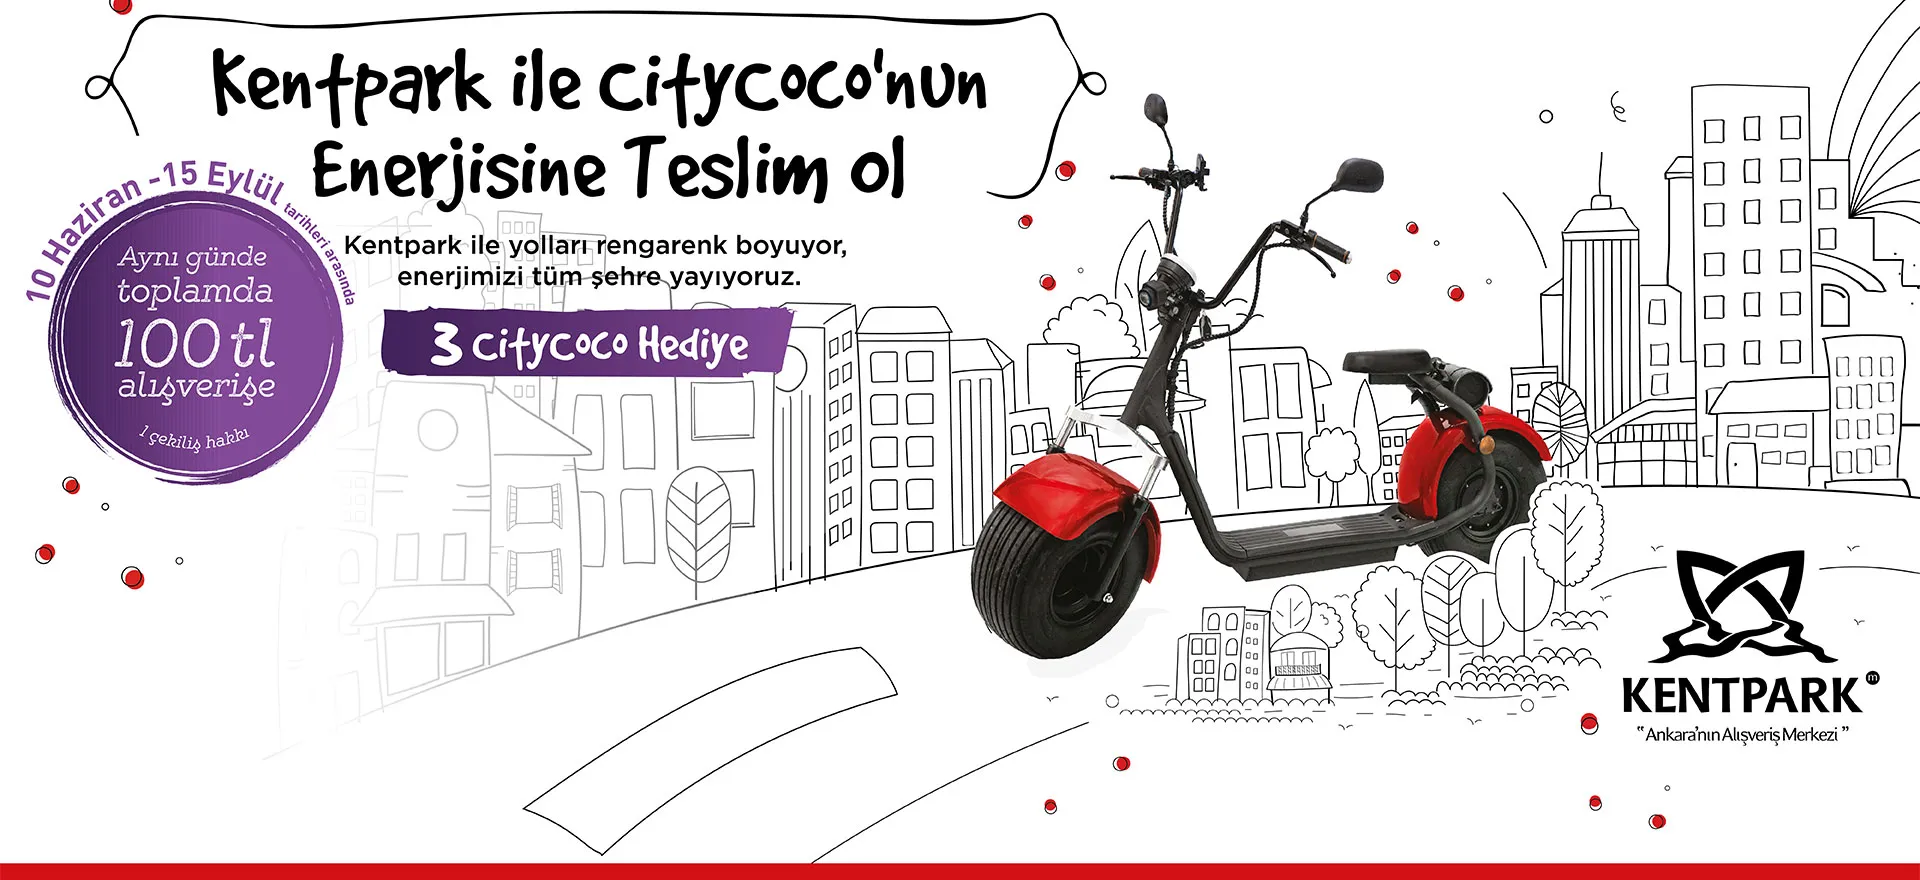 Kentpark ile Citycoco Enerjisine Teslim Ol Çekiliş Kampanyası!